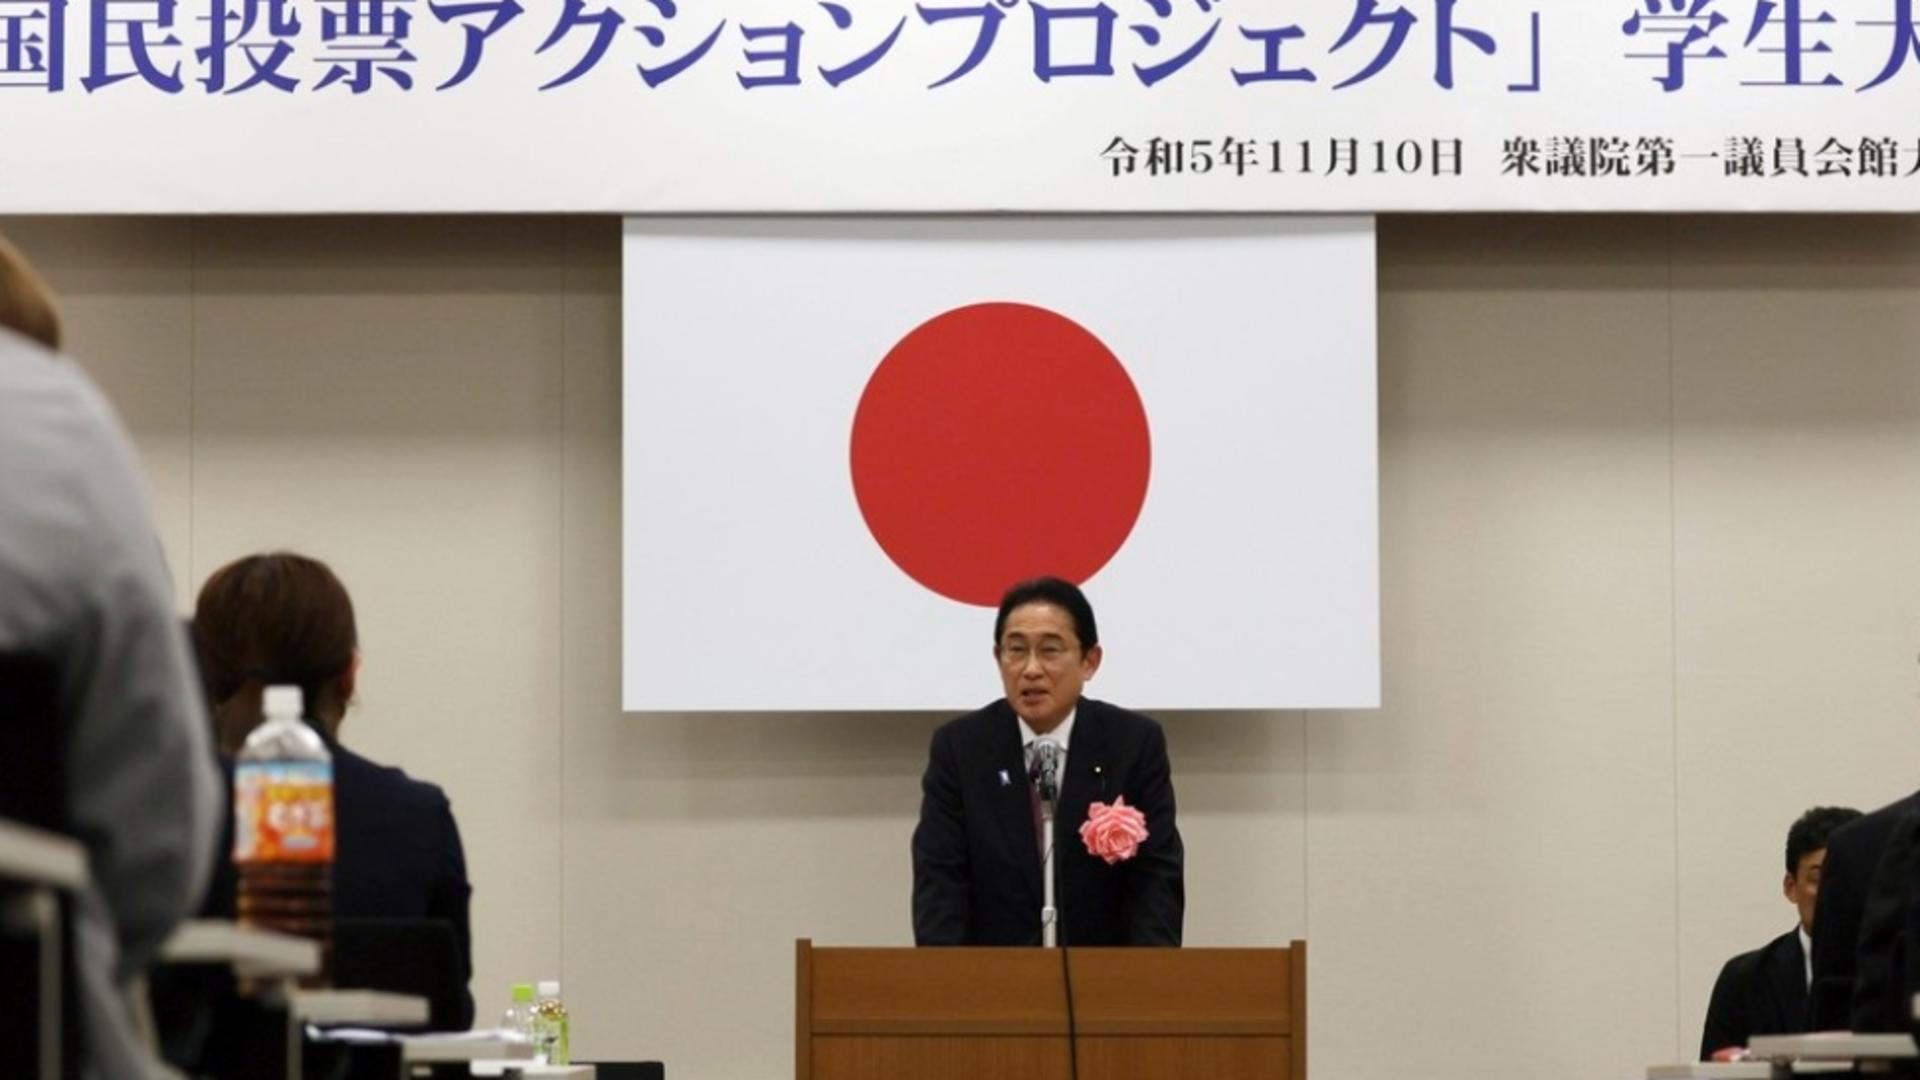 Model de inspirație pentru bugetari: Prim-ministrul Japoniei renunţă la majorarea propriului salariu